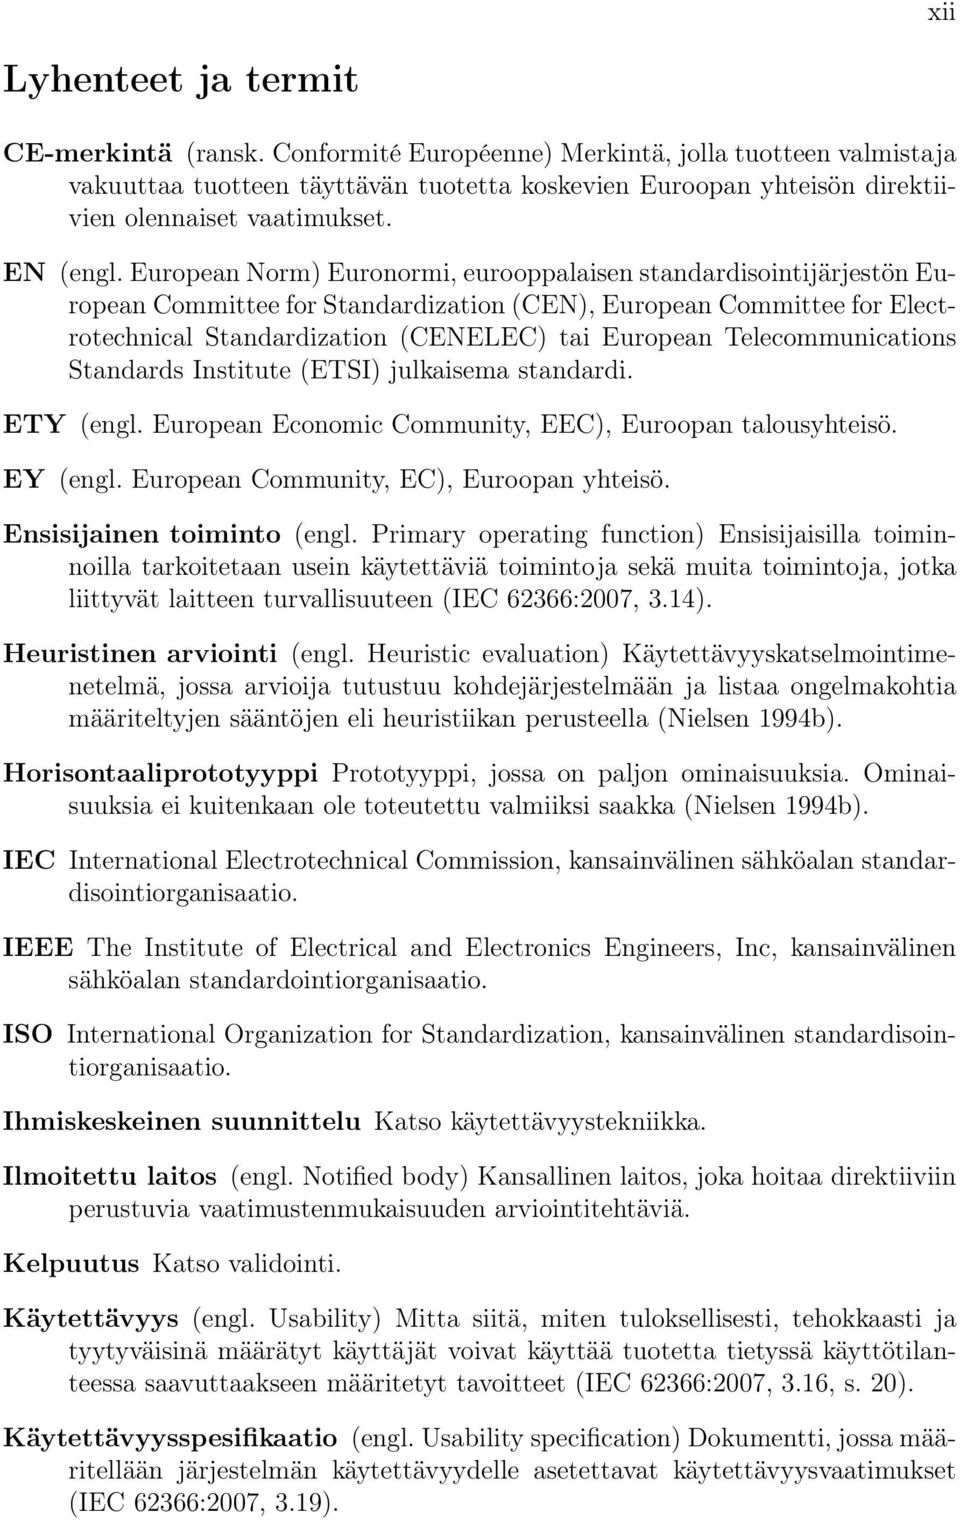 European Norm) Euronormi, eurooppalaisen standardisointijärjestön European Committee for Standardization (CEN), European Committee for Electrotechnical Standardization (CENELEC) tai European